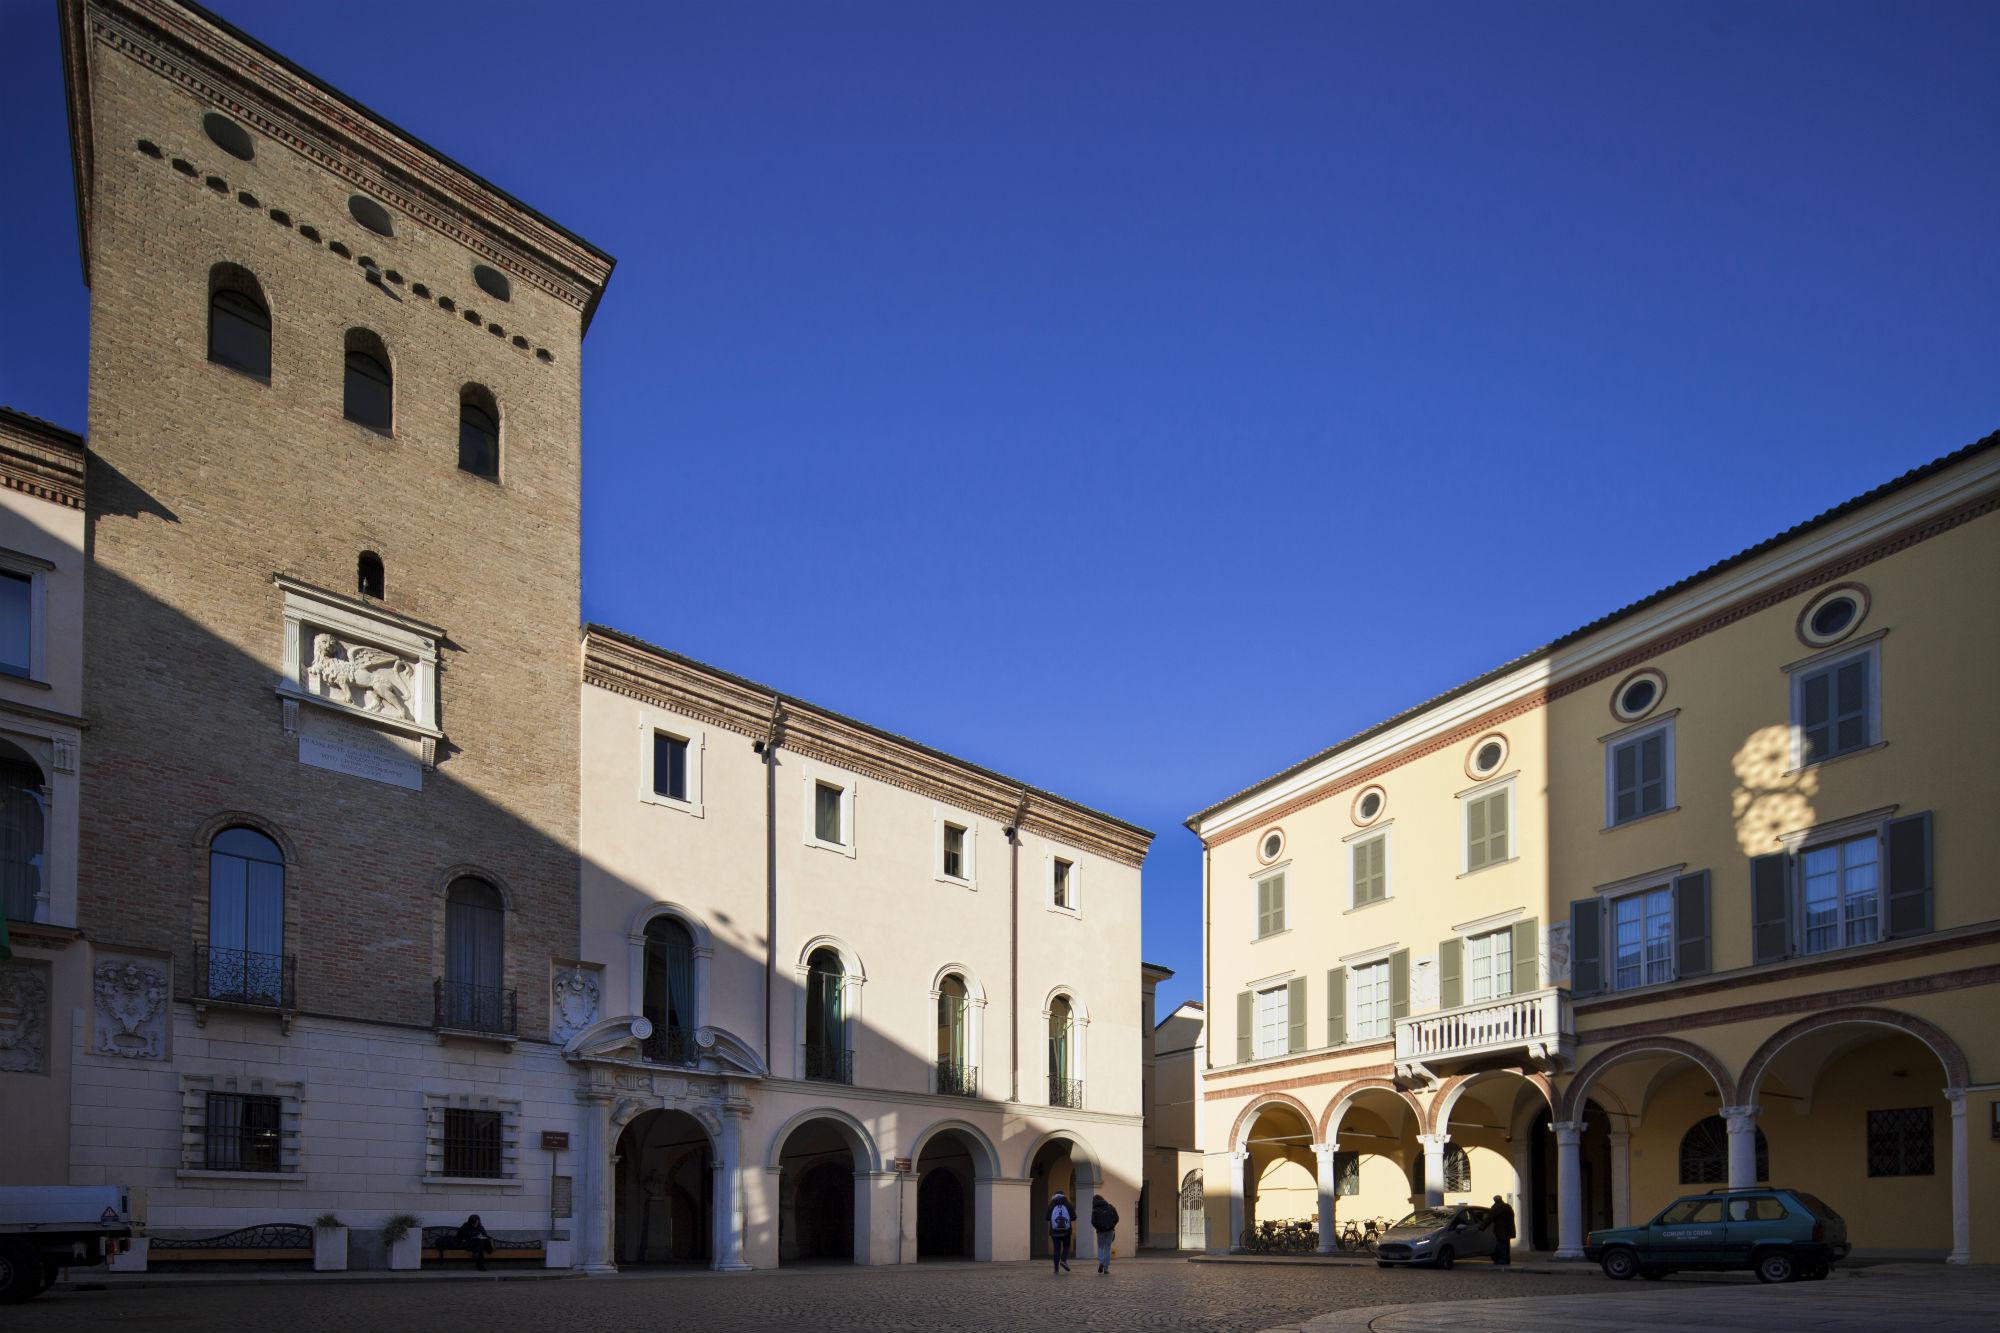  Crema, Palazzo Pretorio con il leone di Venezia (foto di Fiorenza Cicogna)